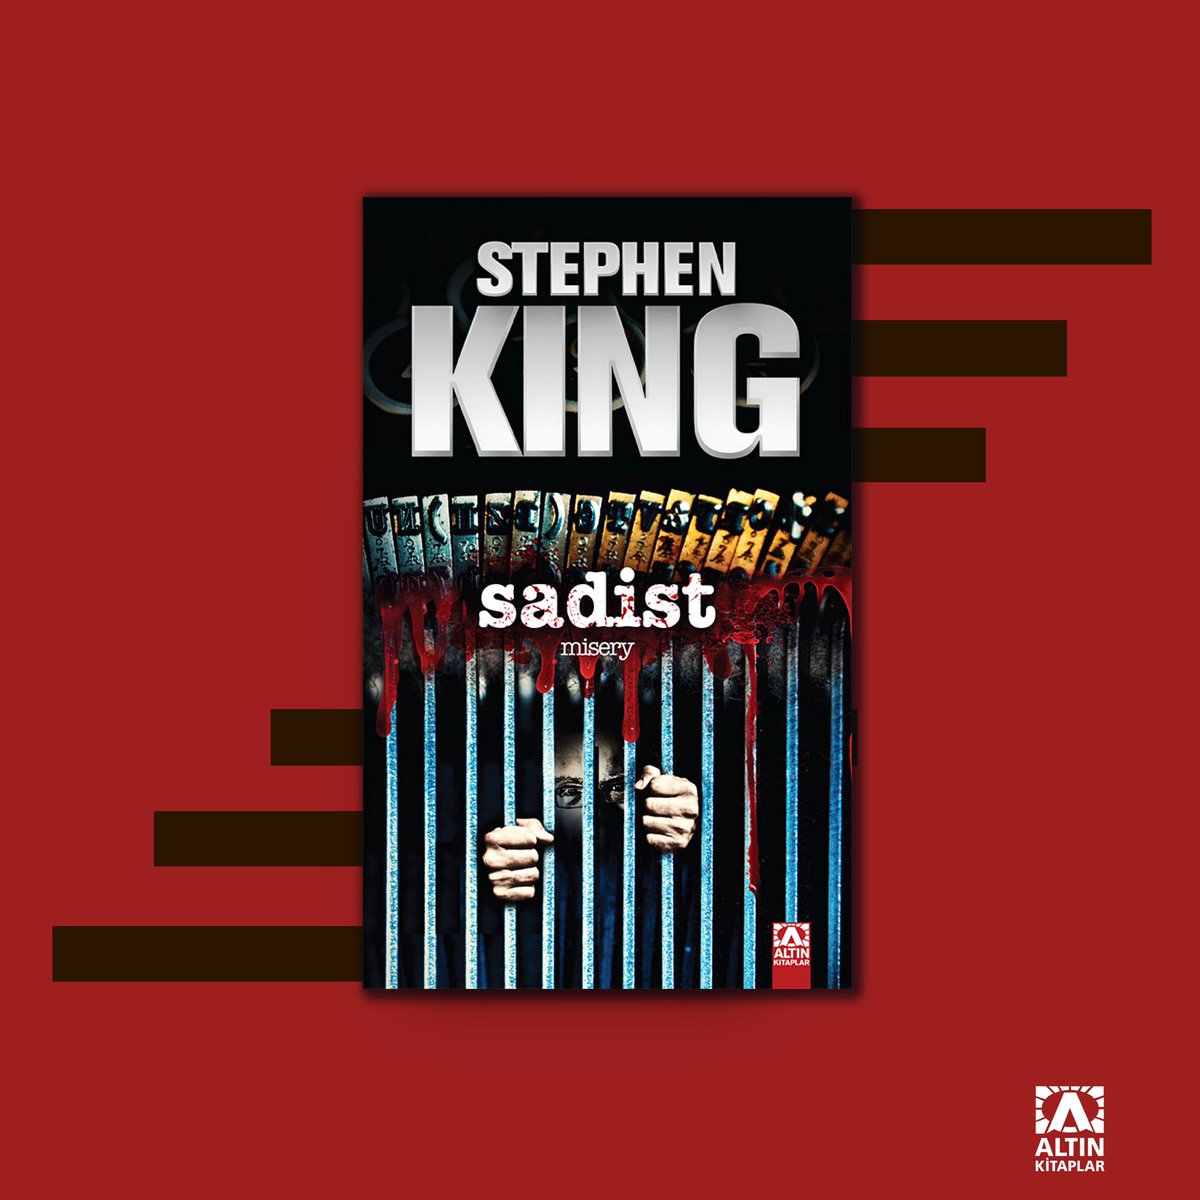 “Yazmak mutsuzluğun nedeni değil, sonucudur.” Sadist, psikolojik gerilim türünün başyapıtları arasında gösterilen ve Stephen King’in parlak yaratıcılığını ortaya koyan çok özel bir roman.